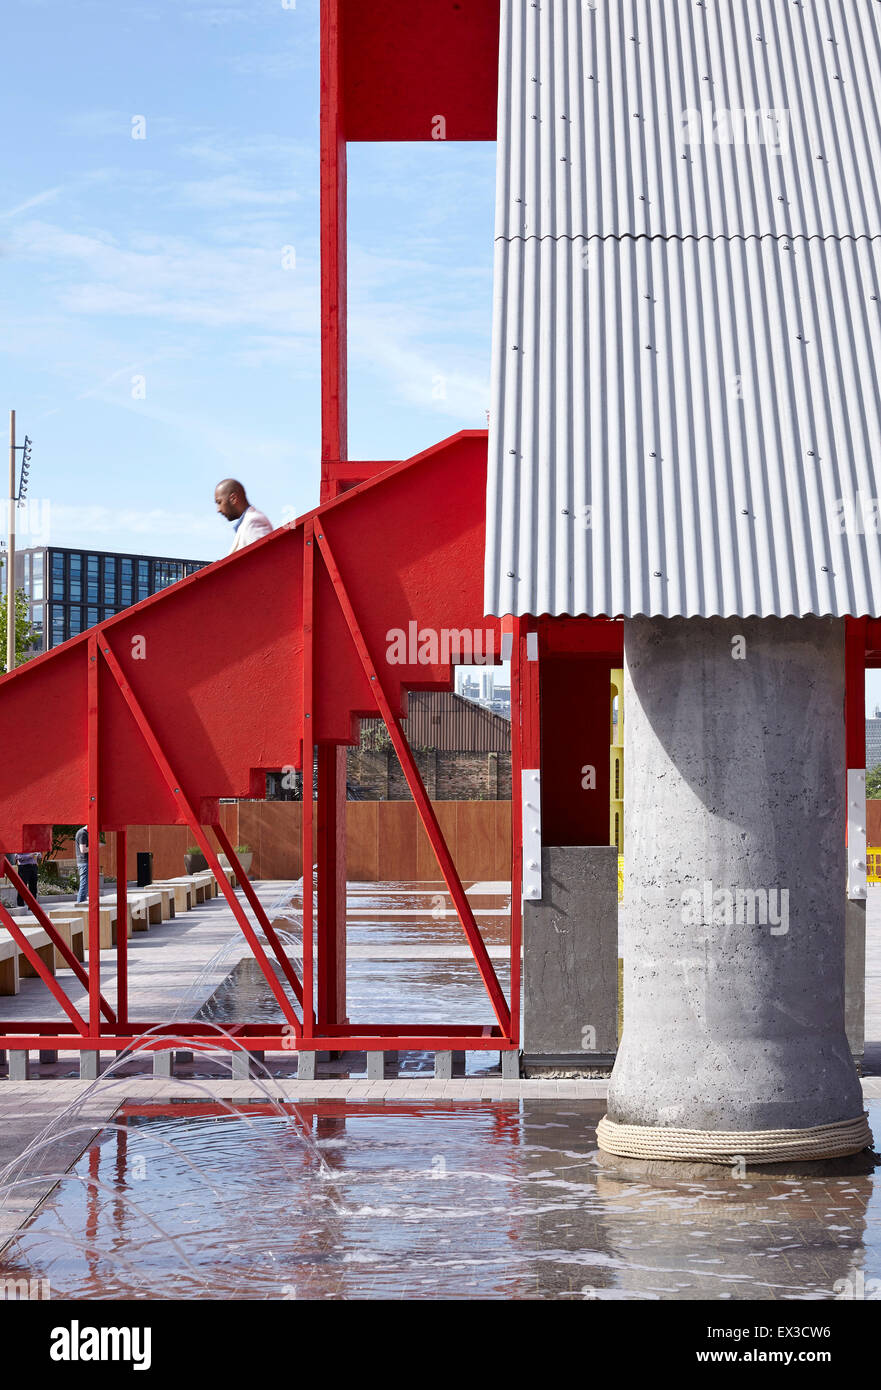 Detail einer der tragenden Säulen aus zweckgebundenen Kanalrohr hergestellt. Große rote Pavillon, London, Vereinigtes Königreich. Architekt: Stockfoto